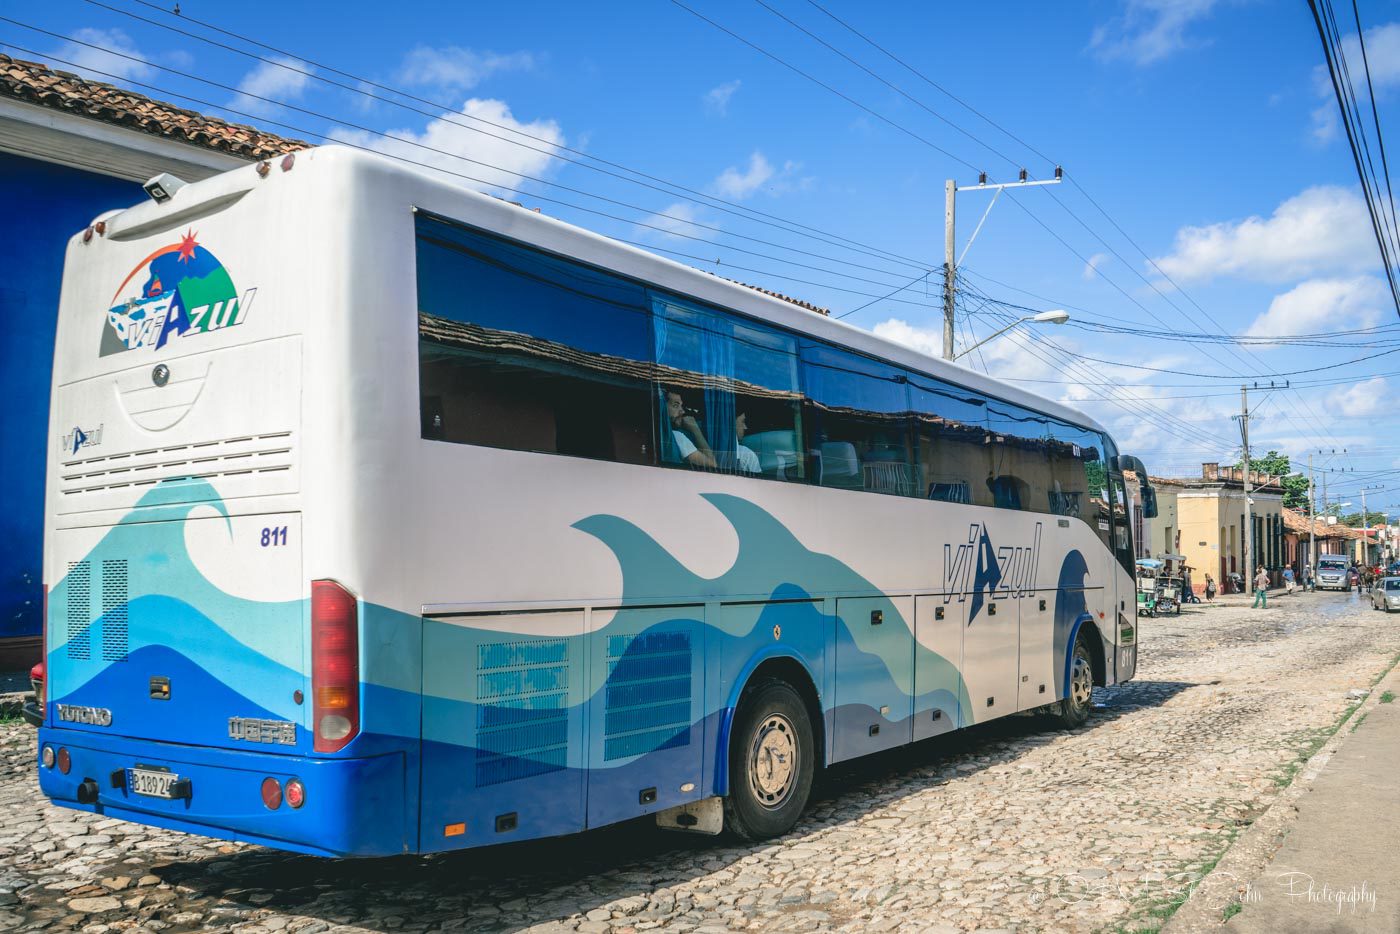 Cuba Itinerary: Viazul bus